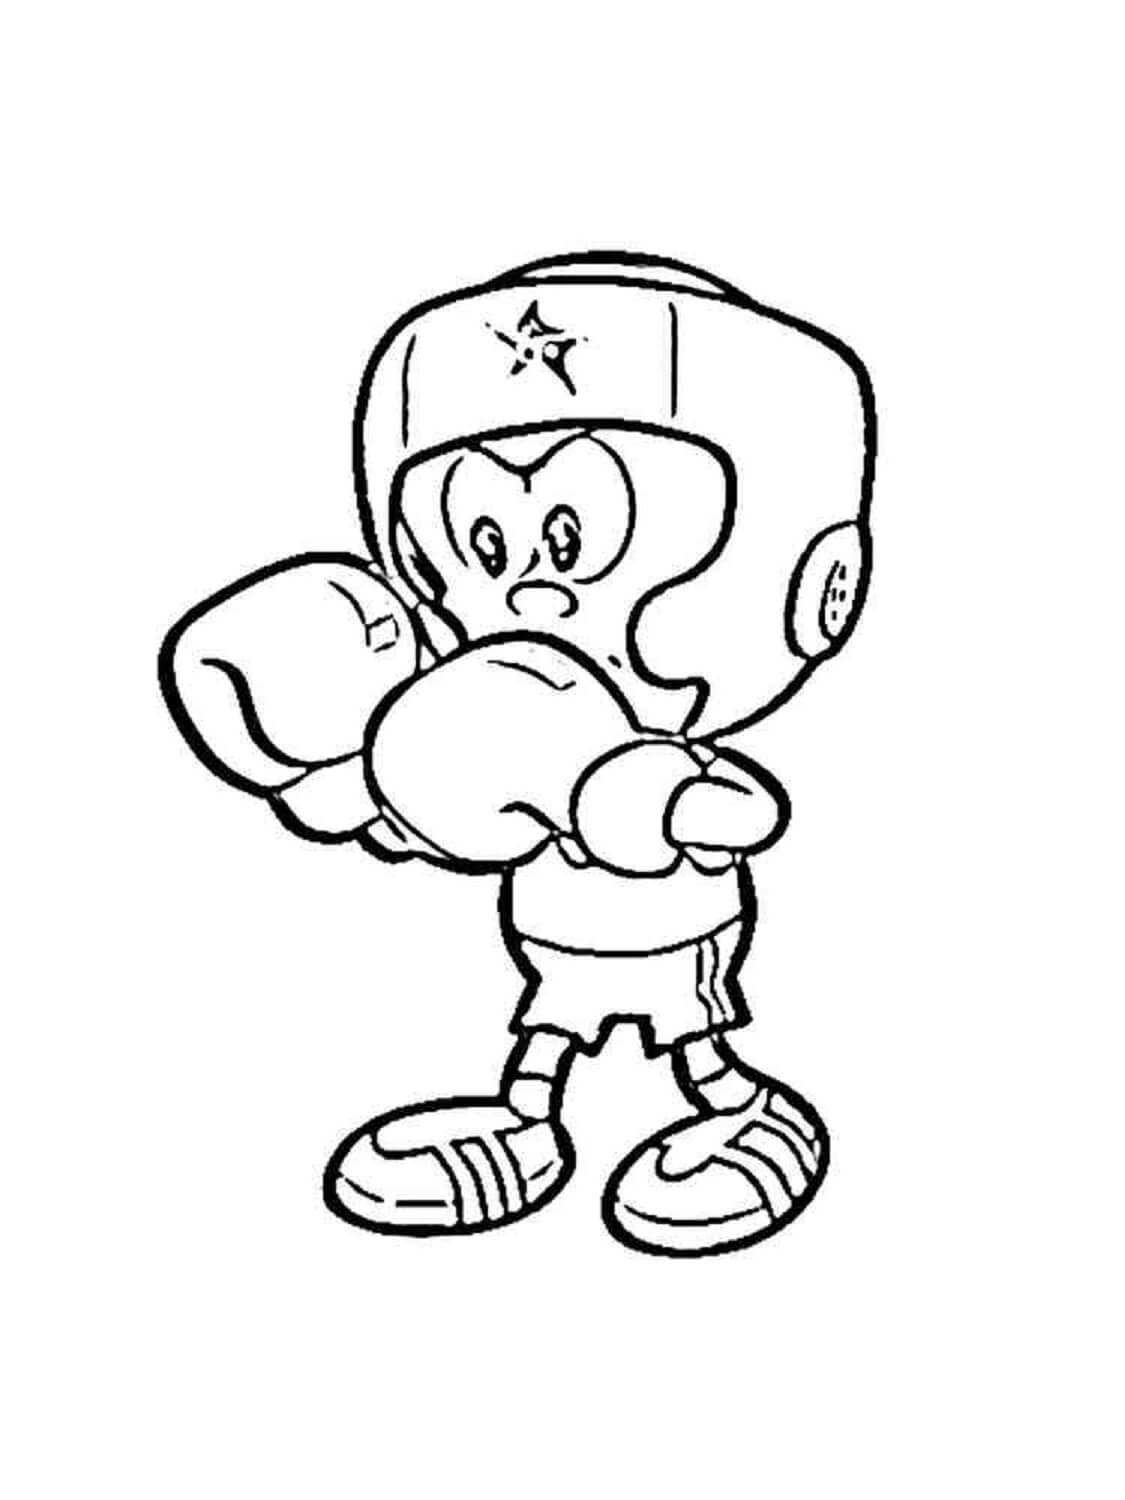 Desenhando O Pequeno Boxer para colorir